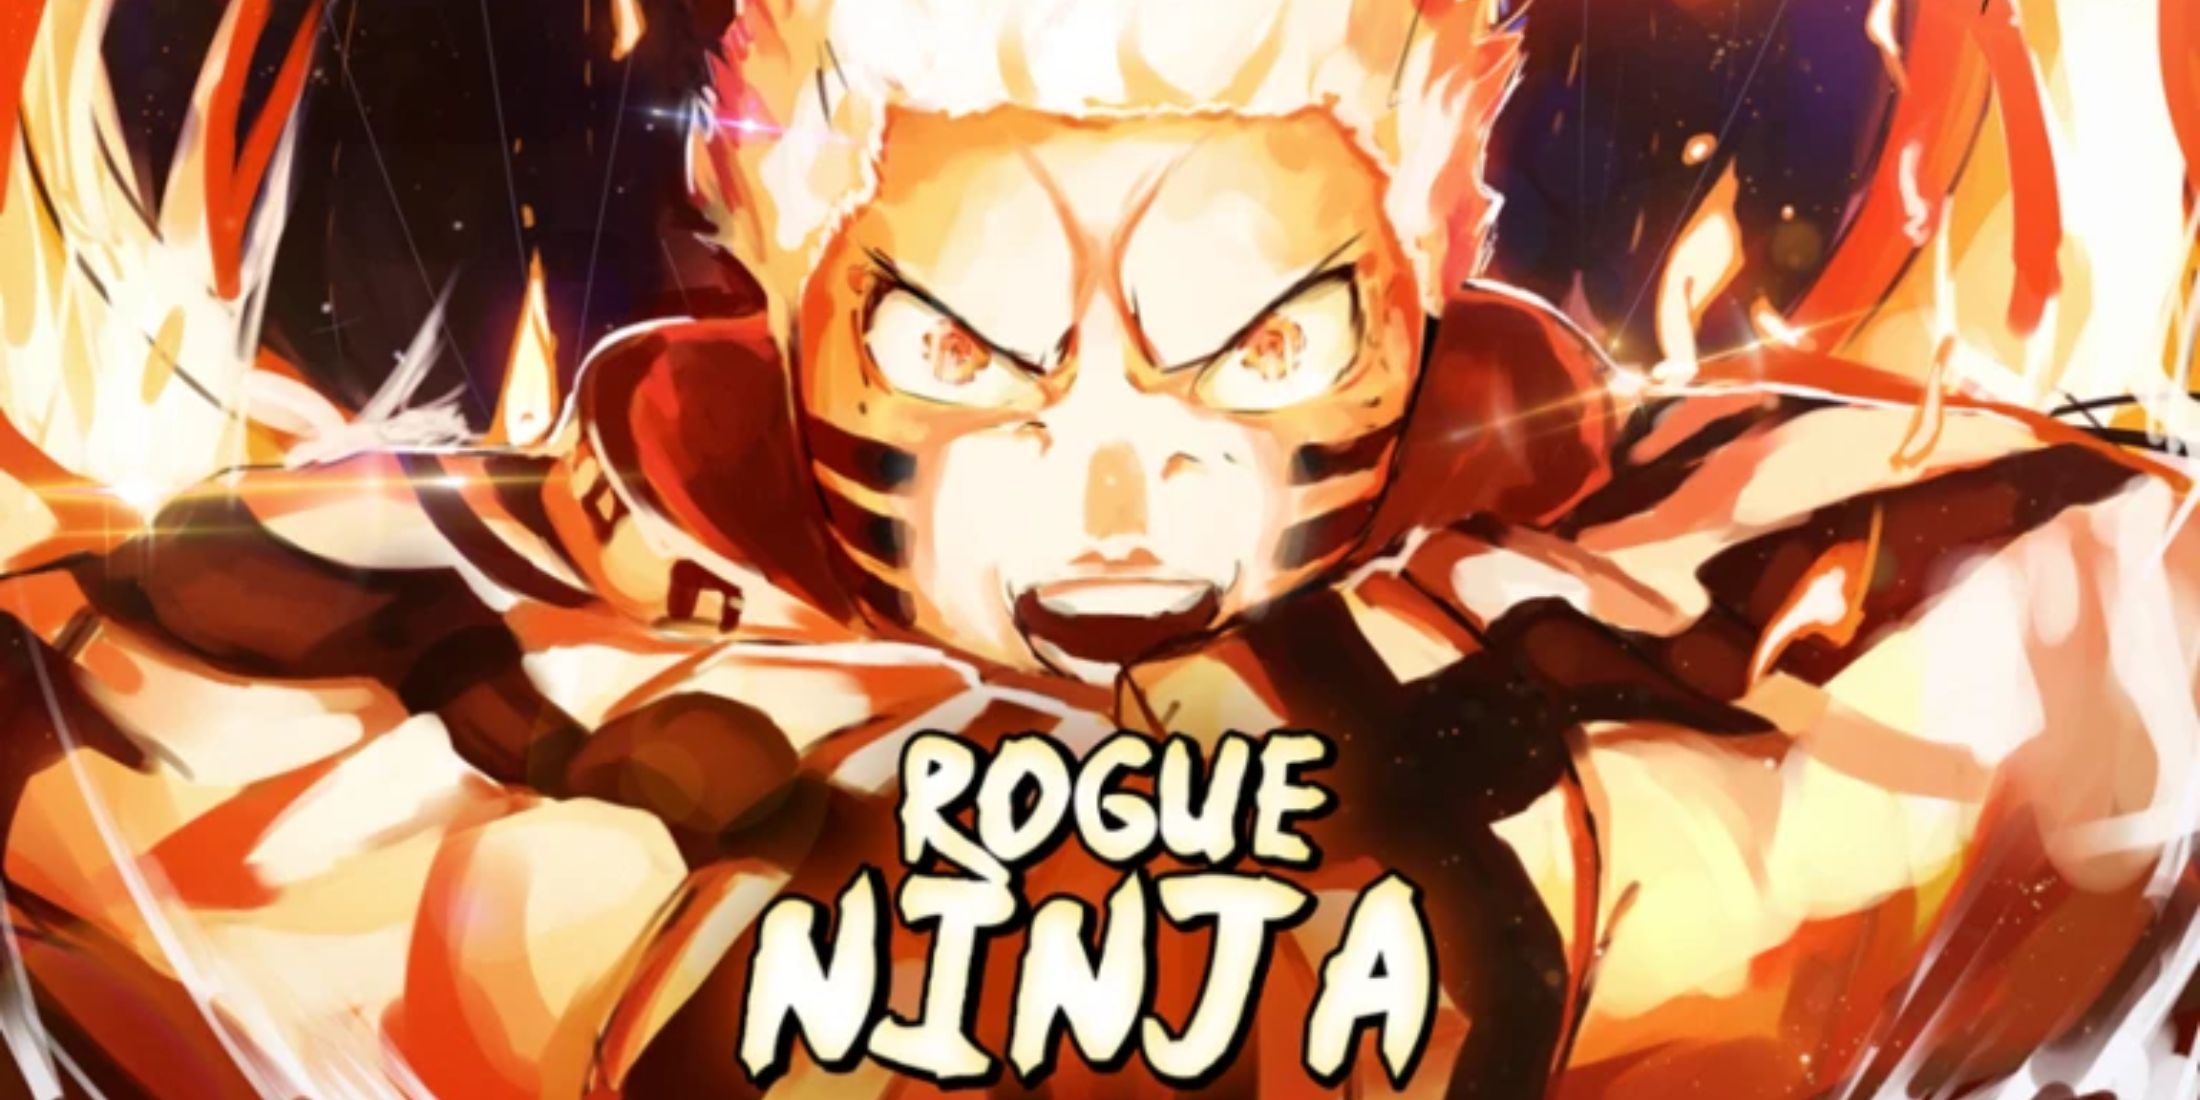 Rogue Ninja character